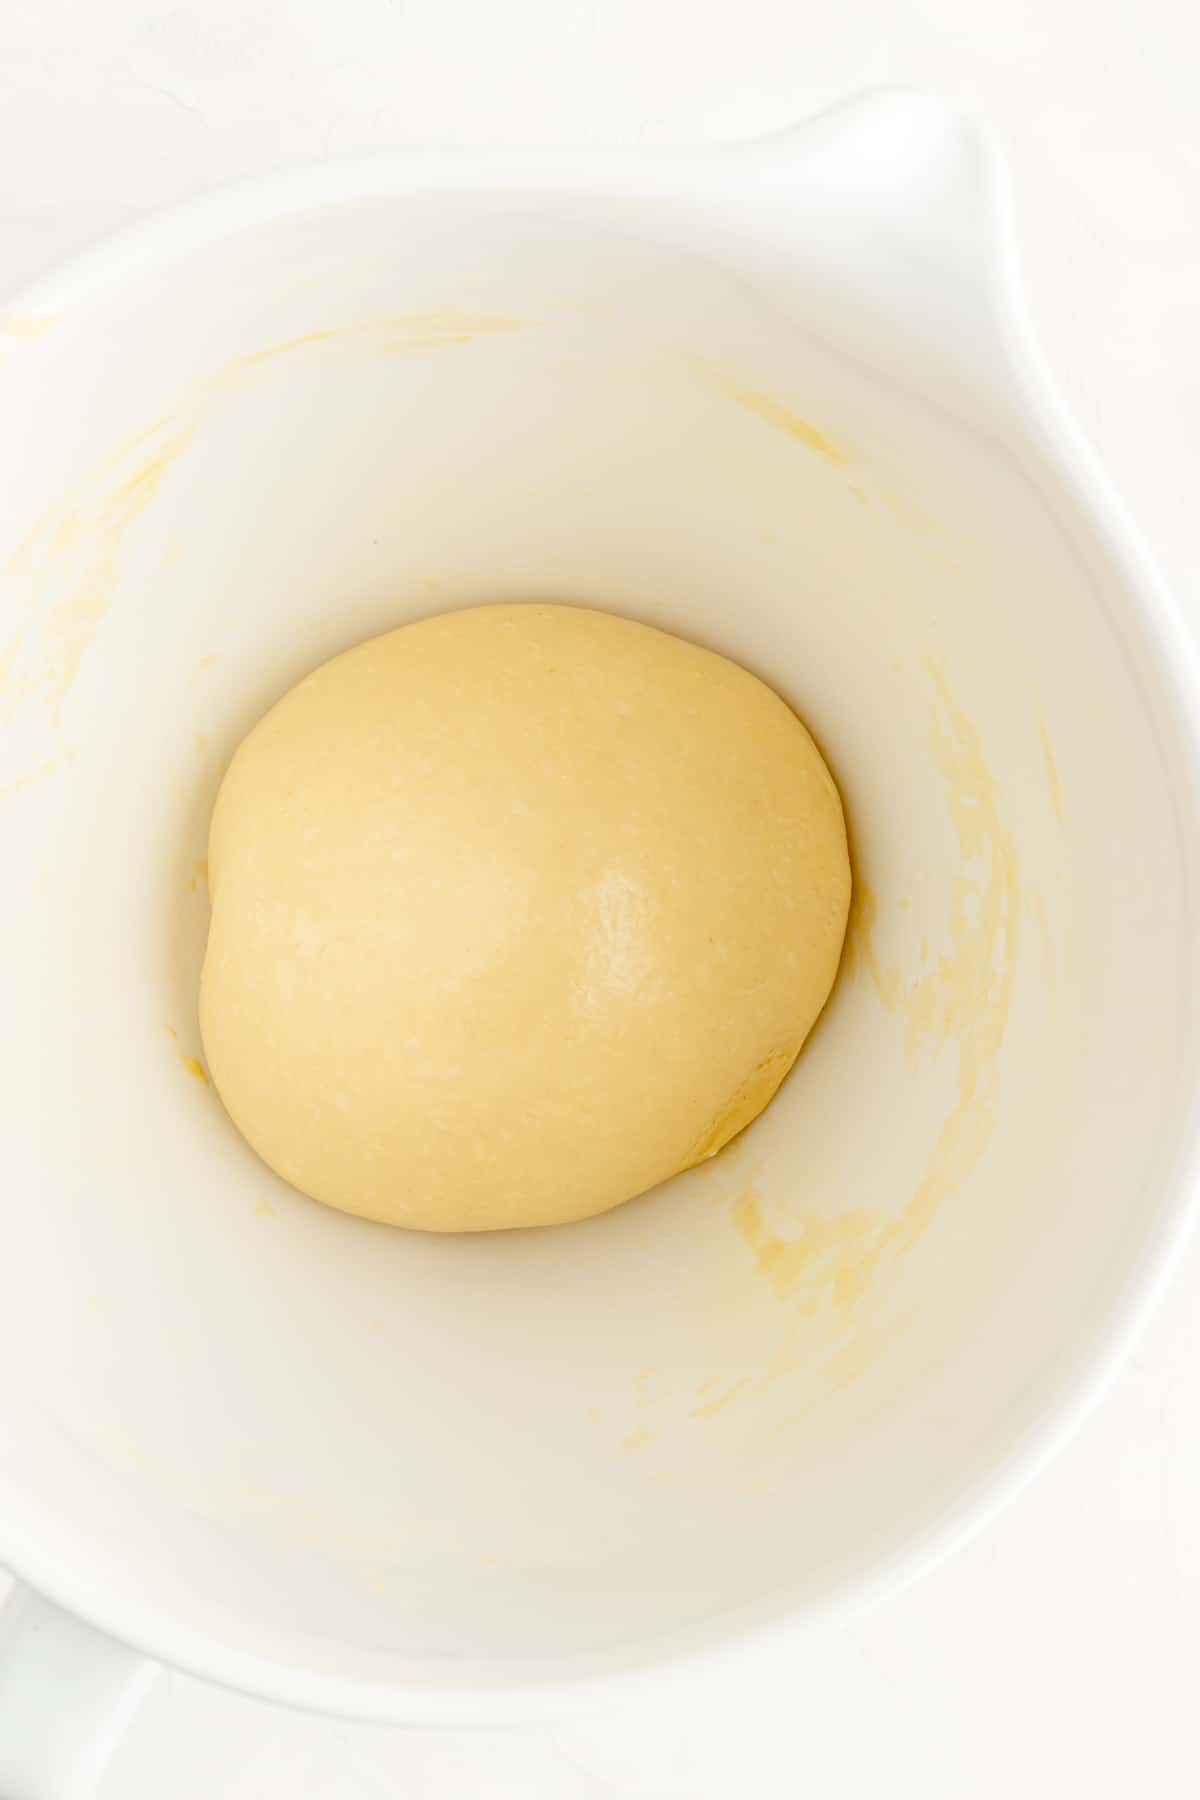 Un-risen greased ball of brioche dough in white bowl.